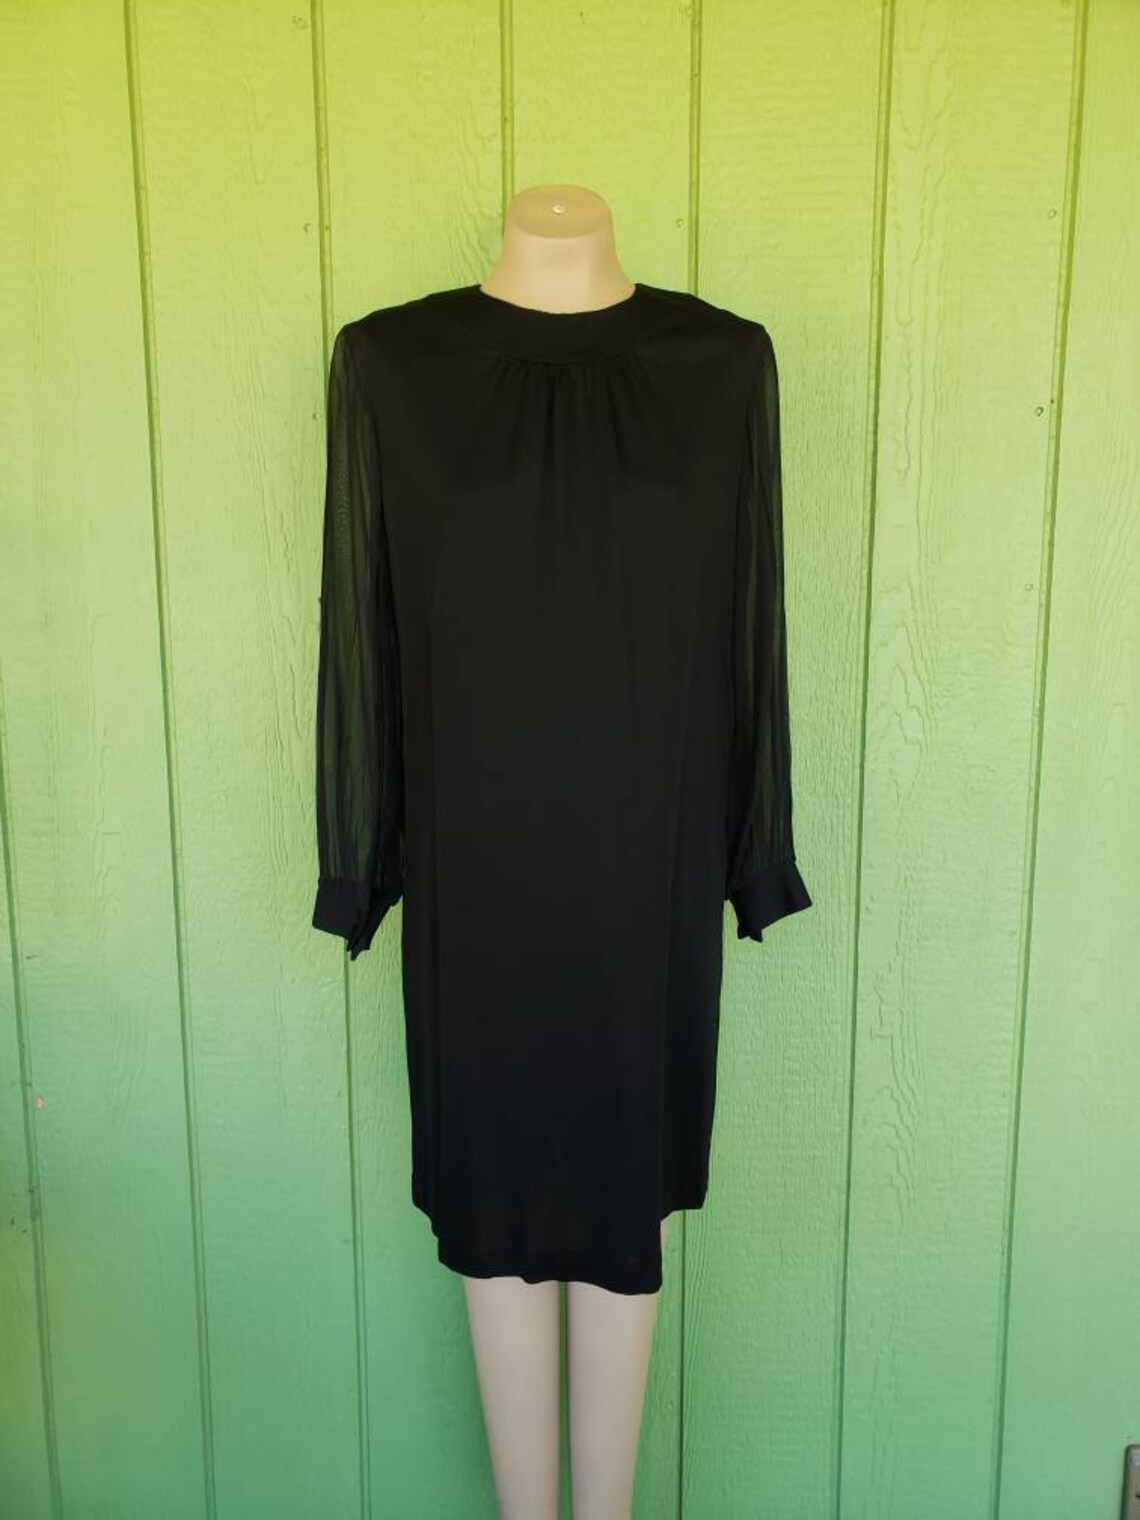 Vintage Black Cocktail Shift Dress With Sheer Bishop Sleeves - Etsy